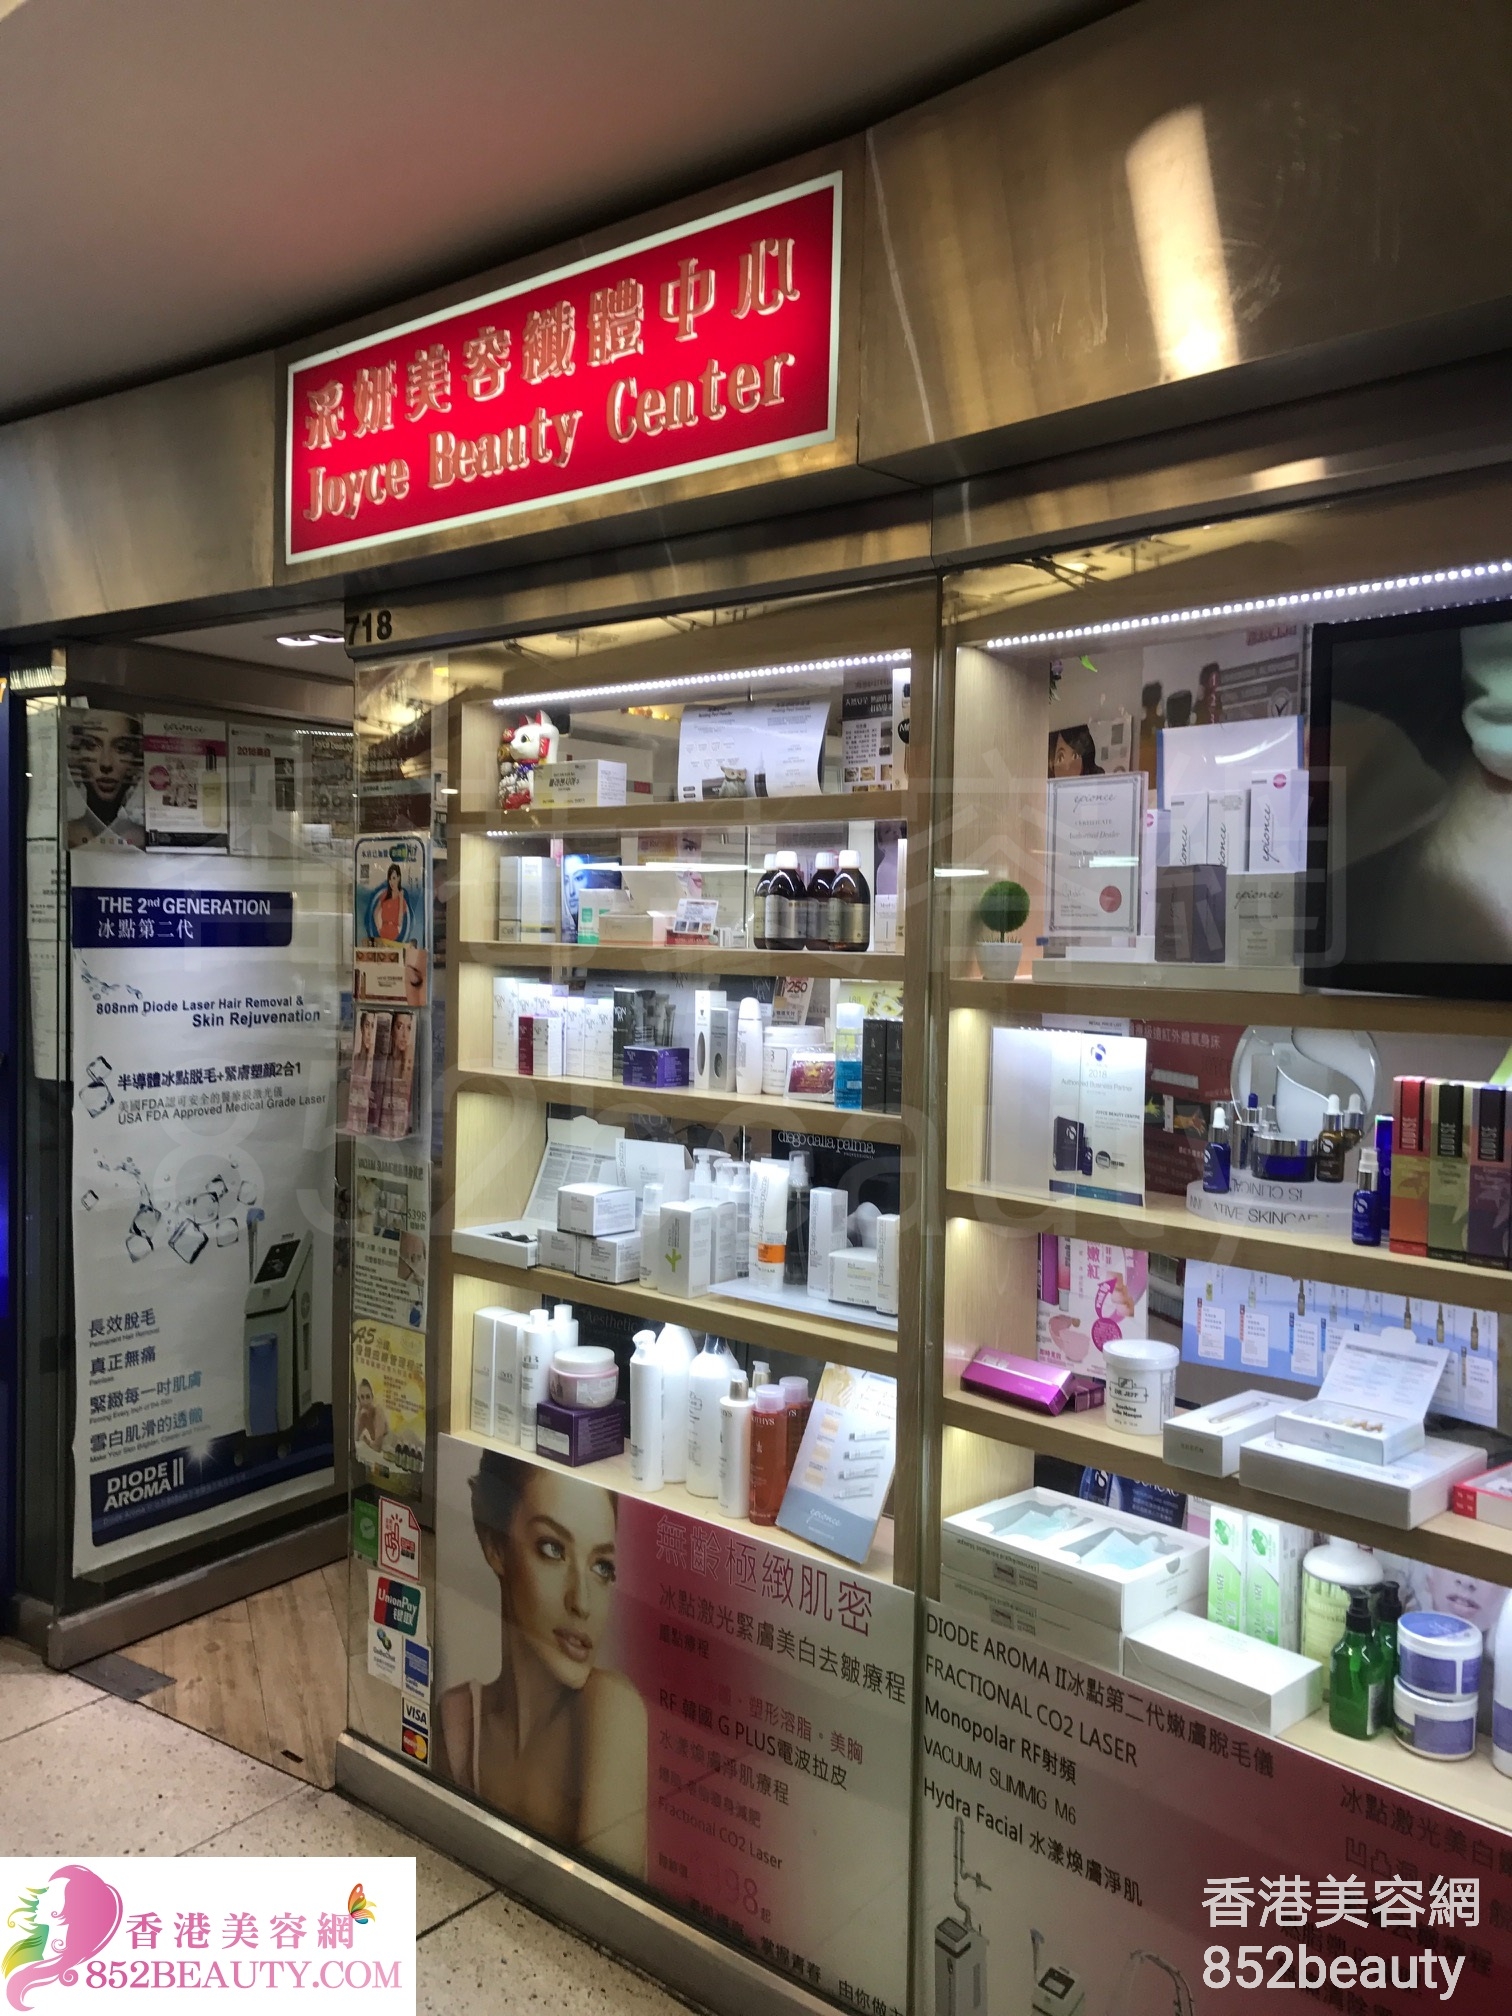 : 采妍美容纖體中心 Joyce Beauty Center (西九龍中心)